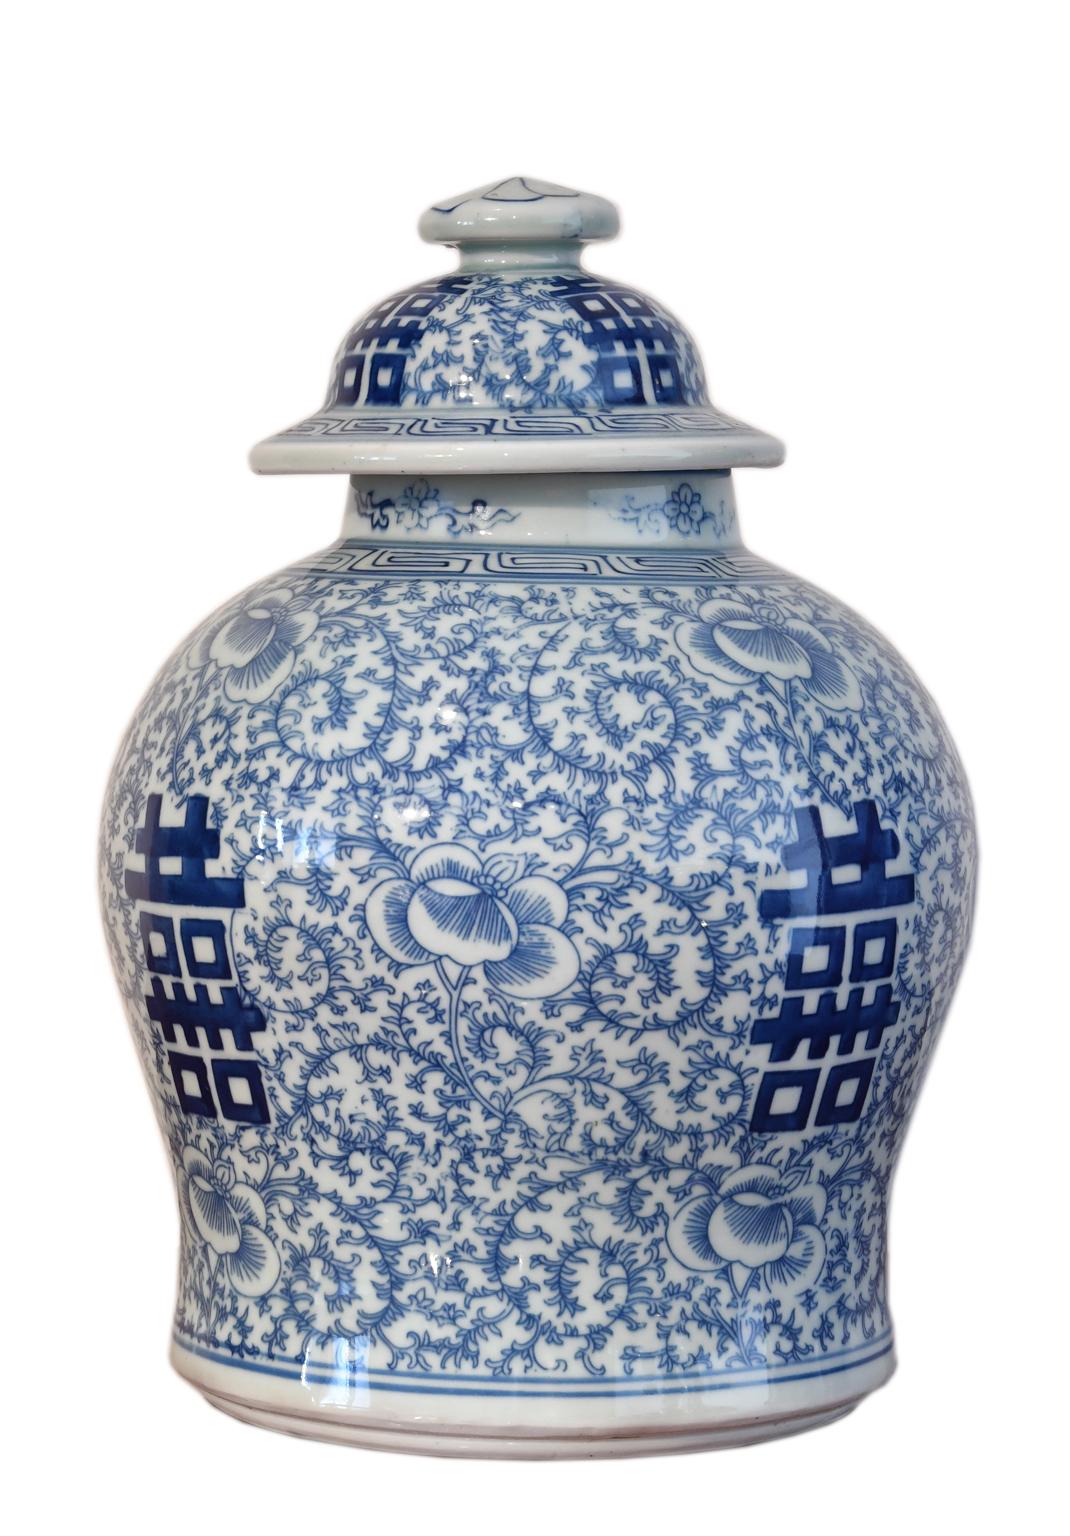 Jolie urne ou jarre à couvercle en porcelaine chinoise de forme balustre, décorée à la main en bleu de cobalt de 